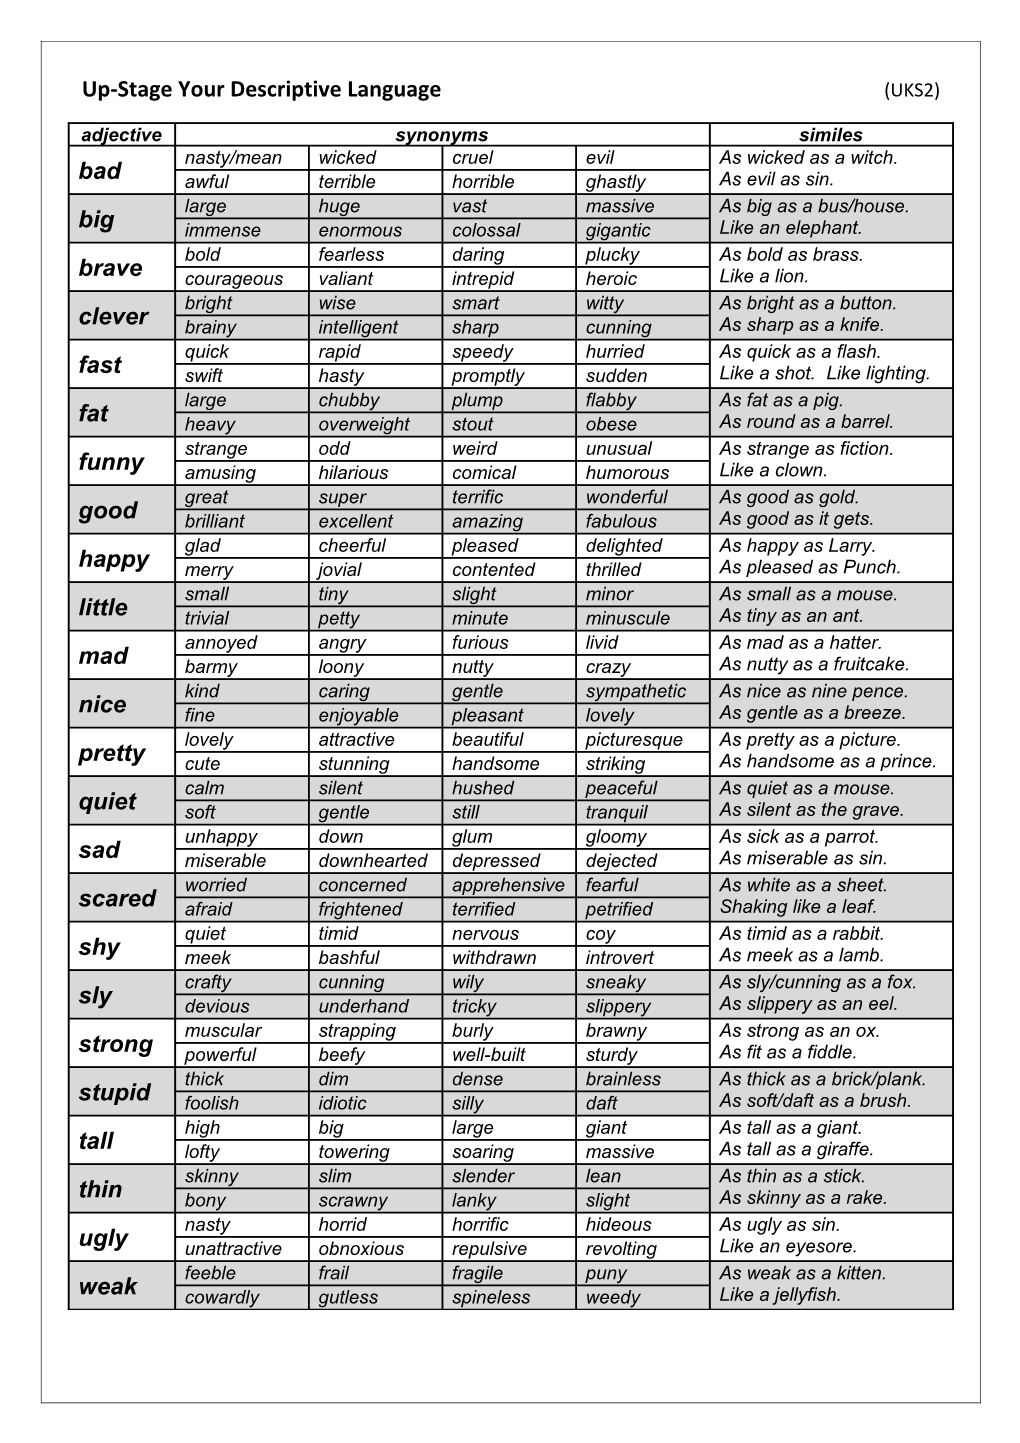 Up-Stage Your Descriptive Language (UKS2)